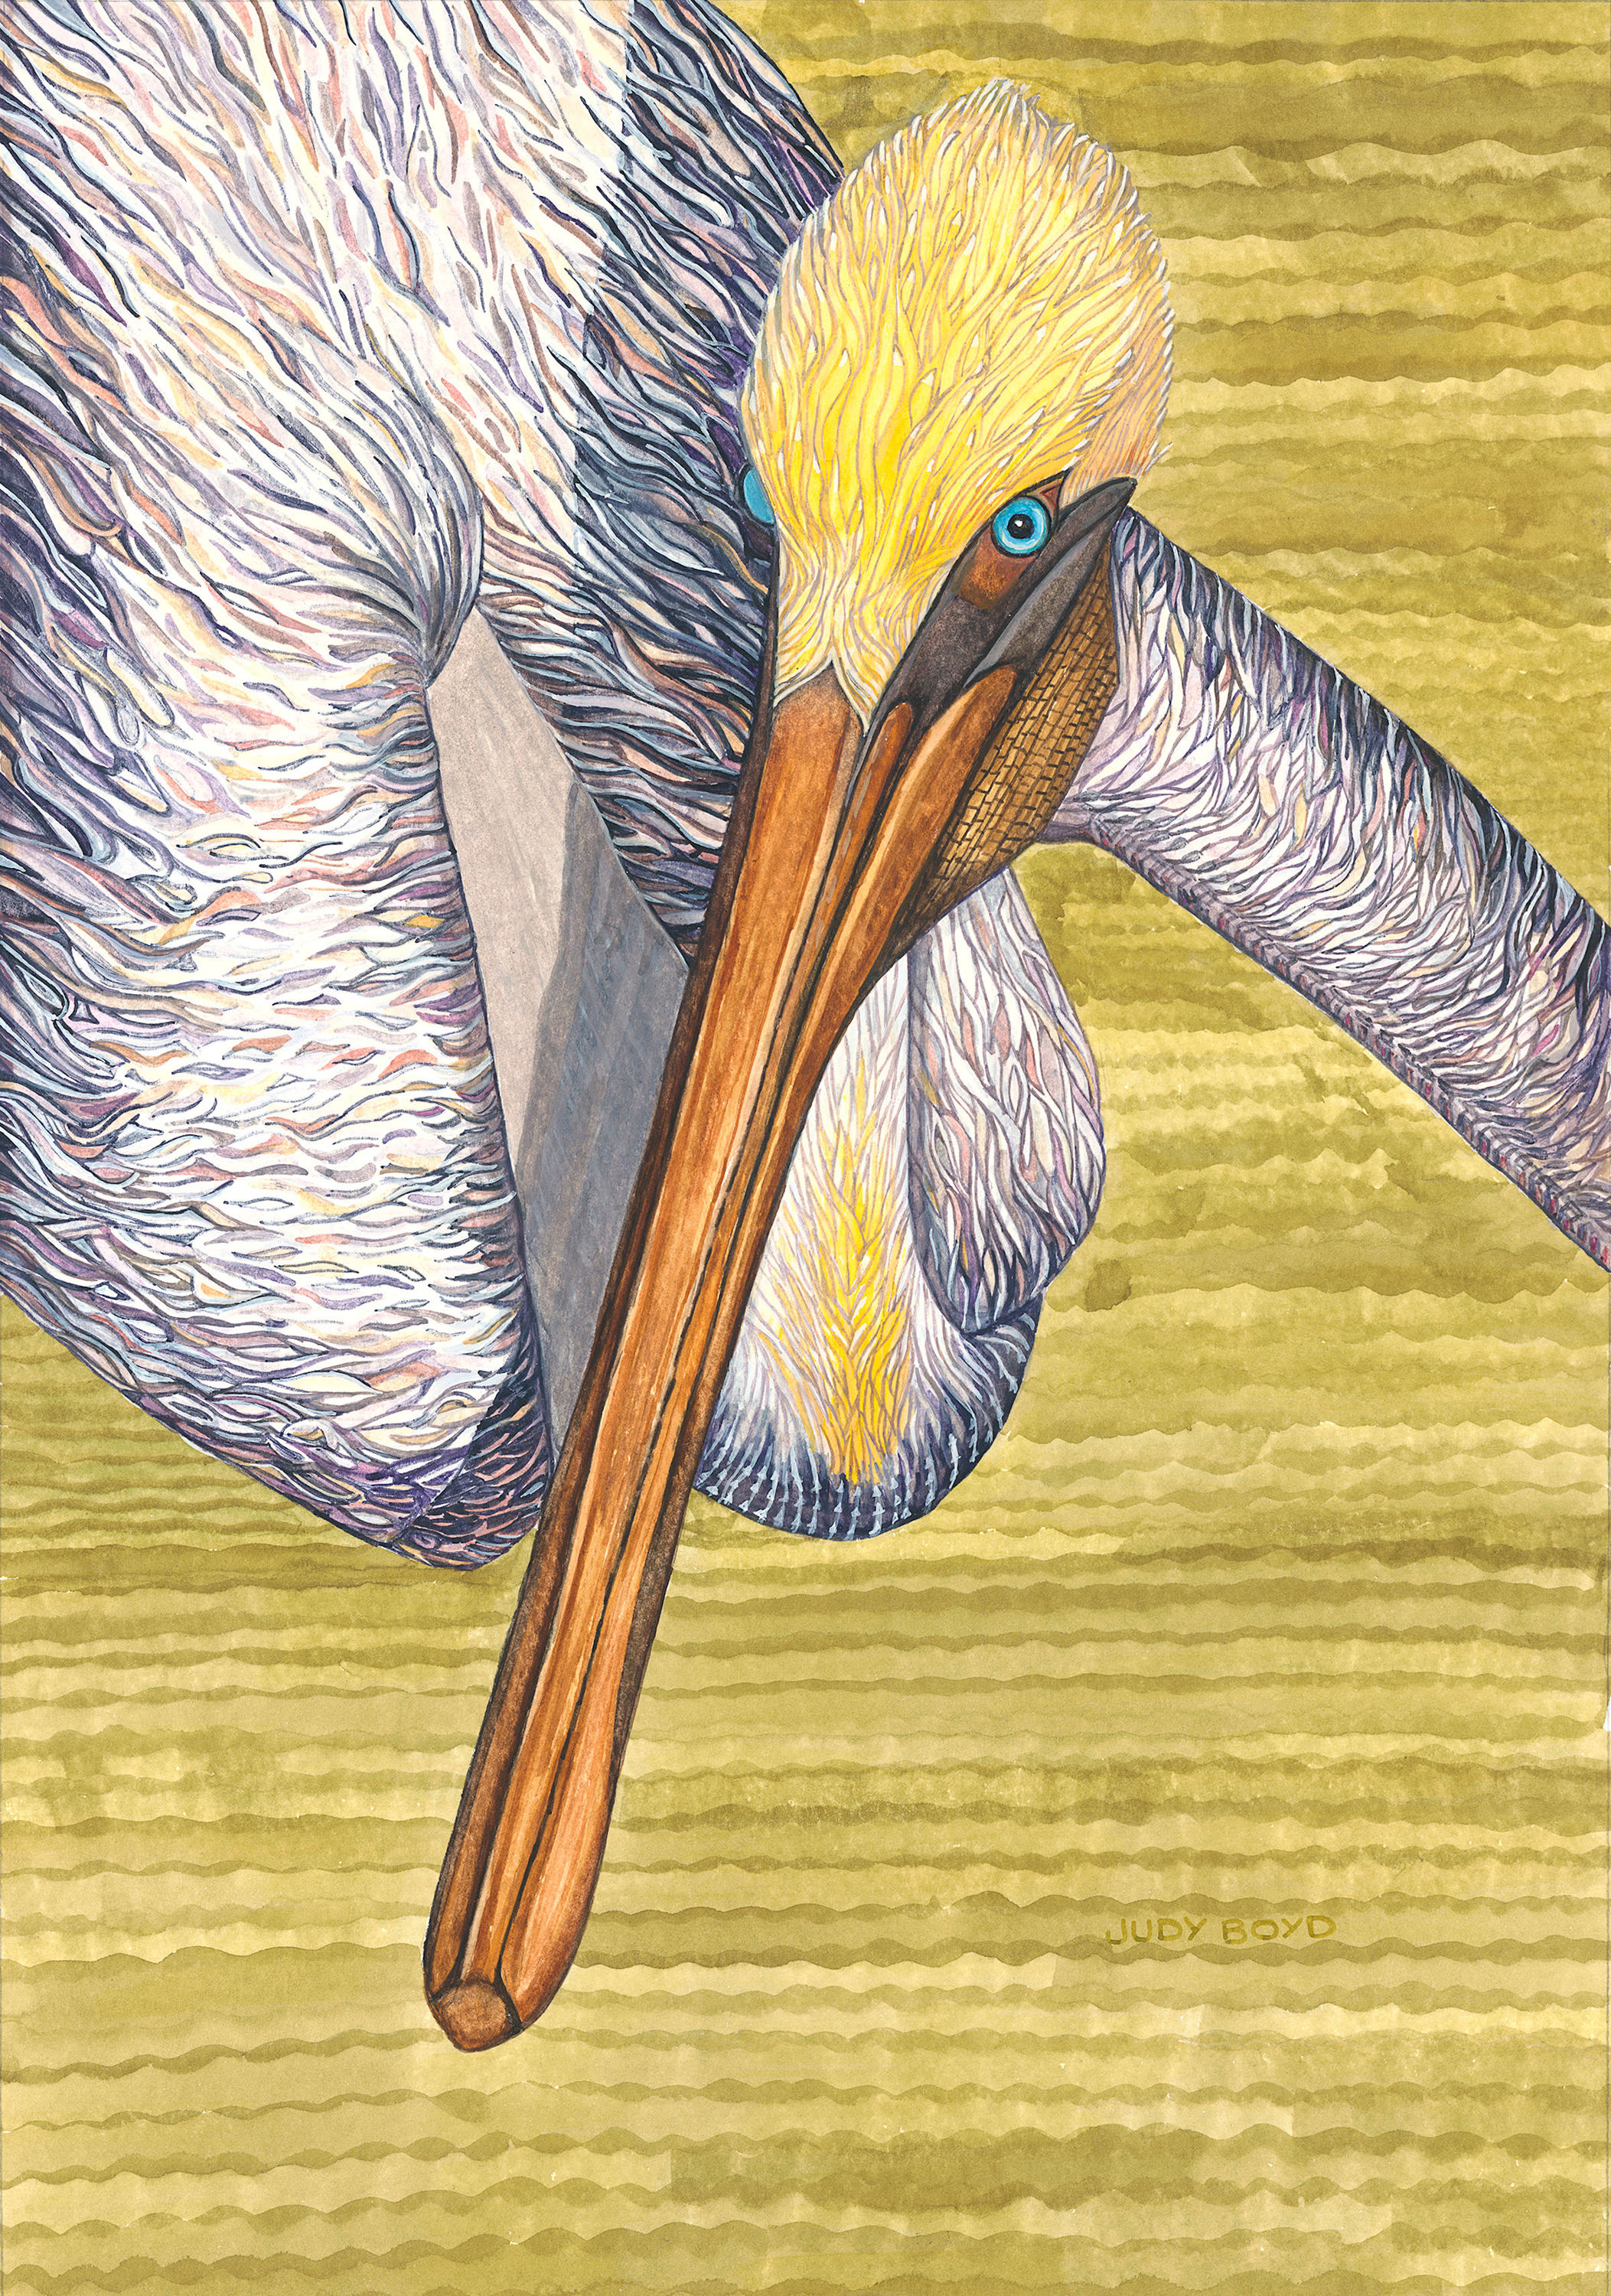 Brown pelican 300ppi uiimhf